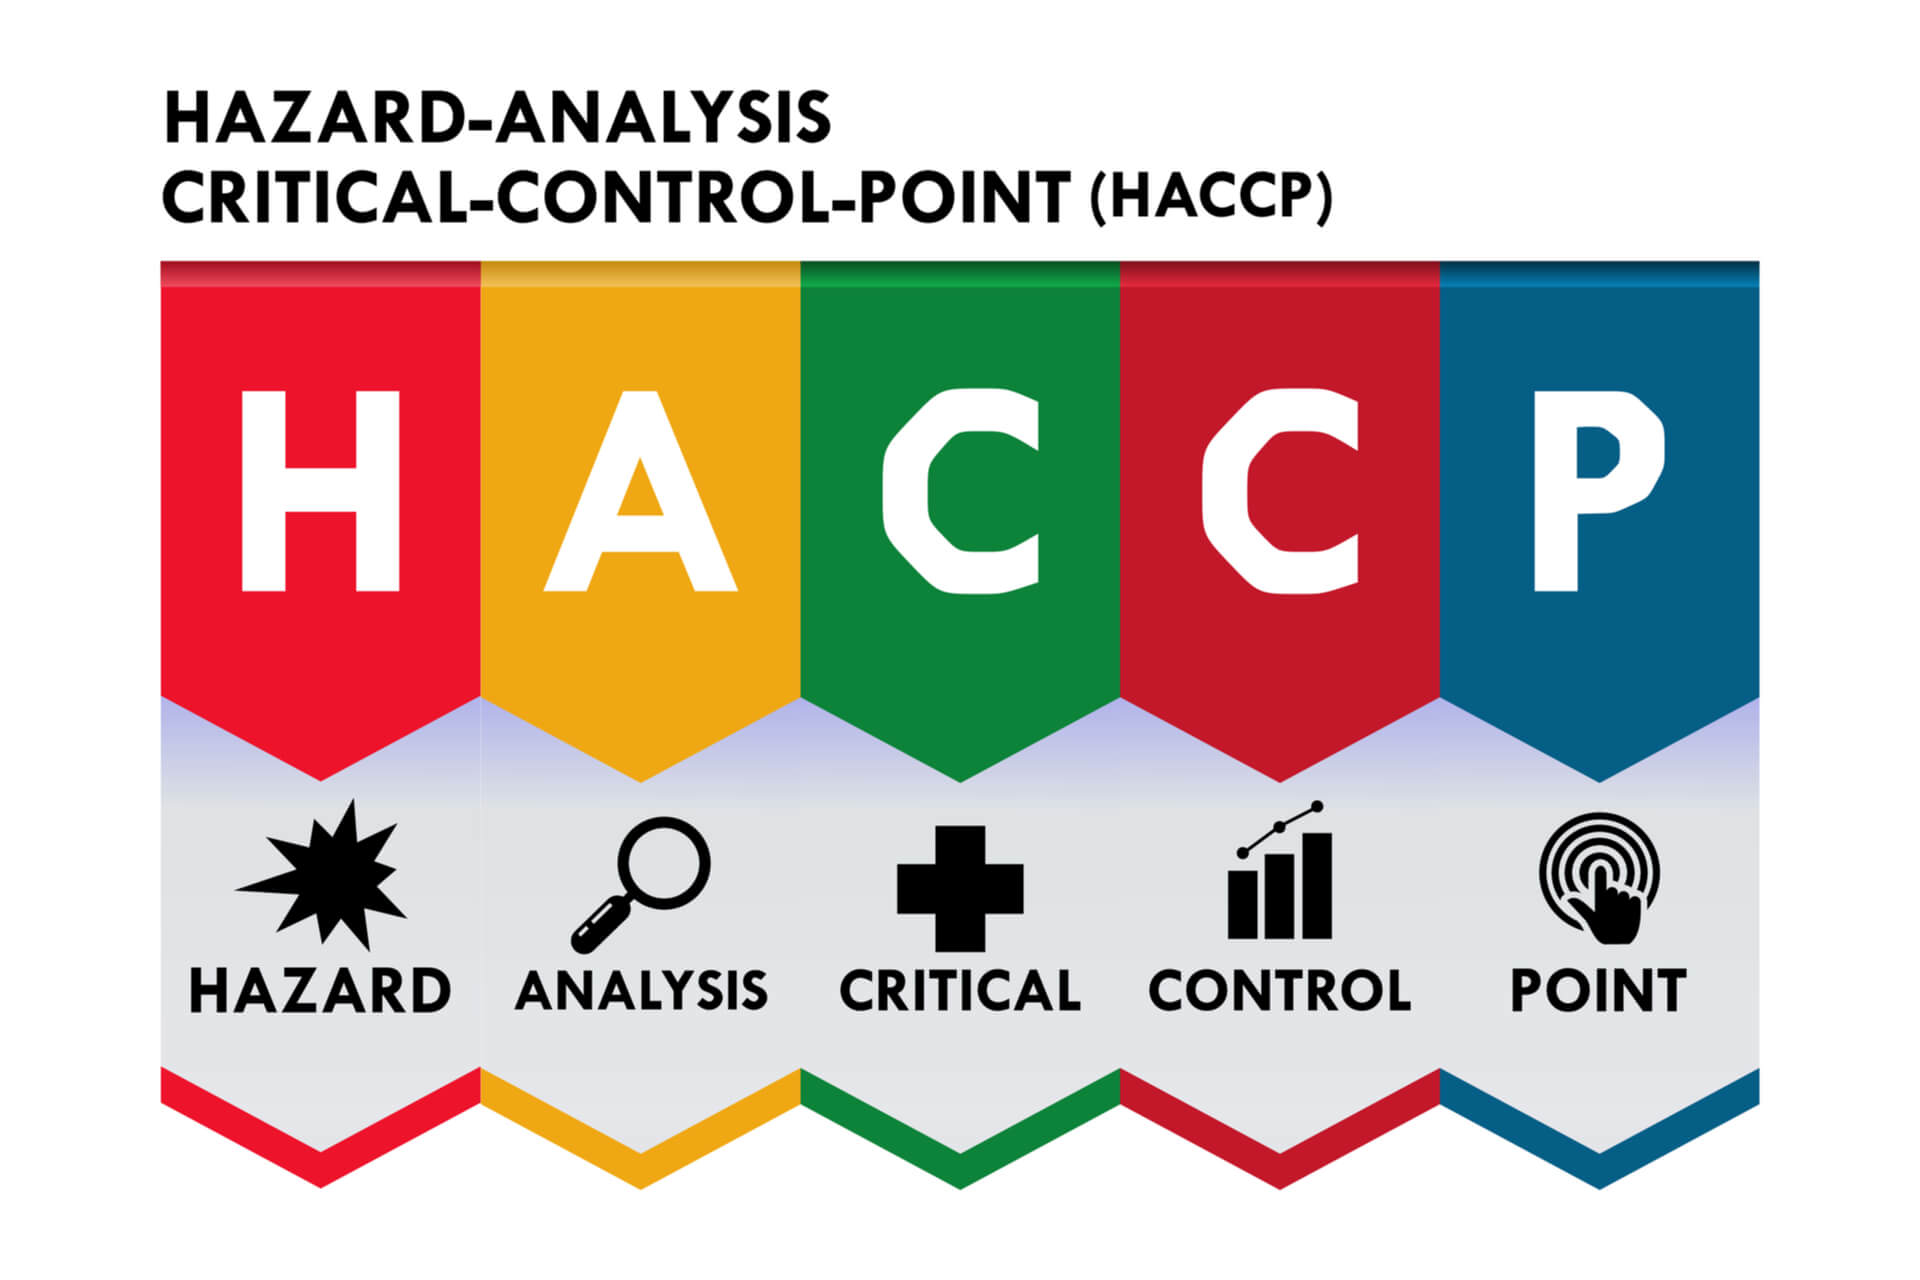 Manuale di autocontrollo HACCP, a cosa serve e come richiederlo